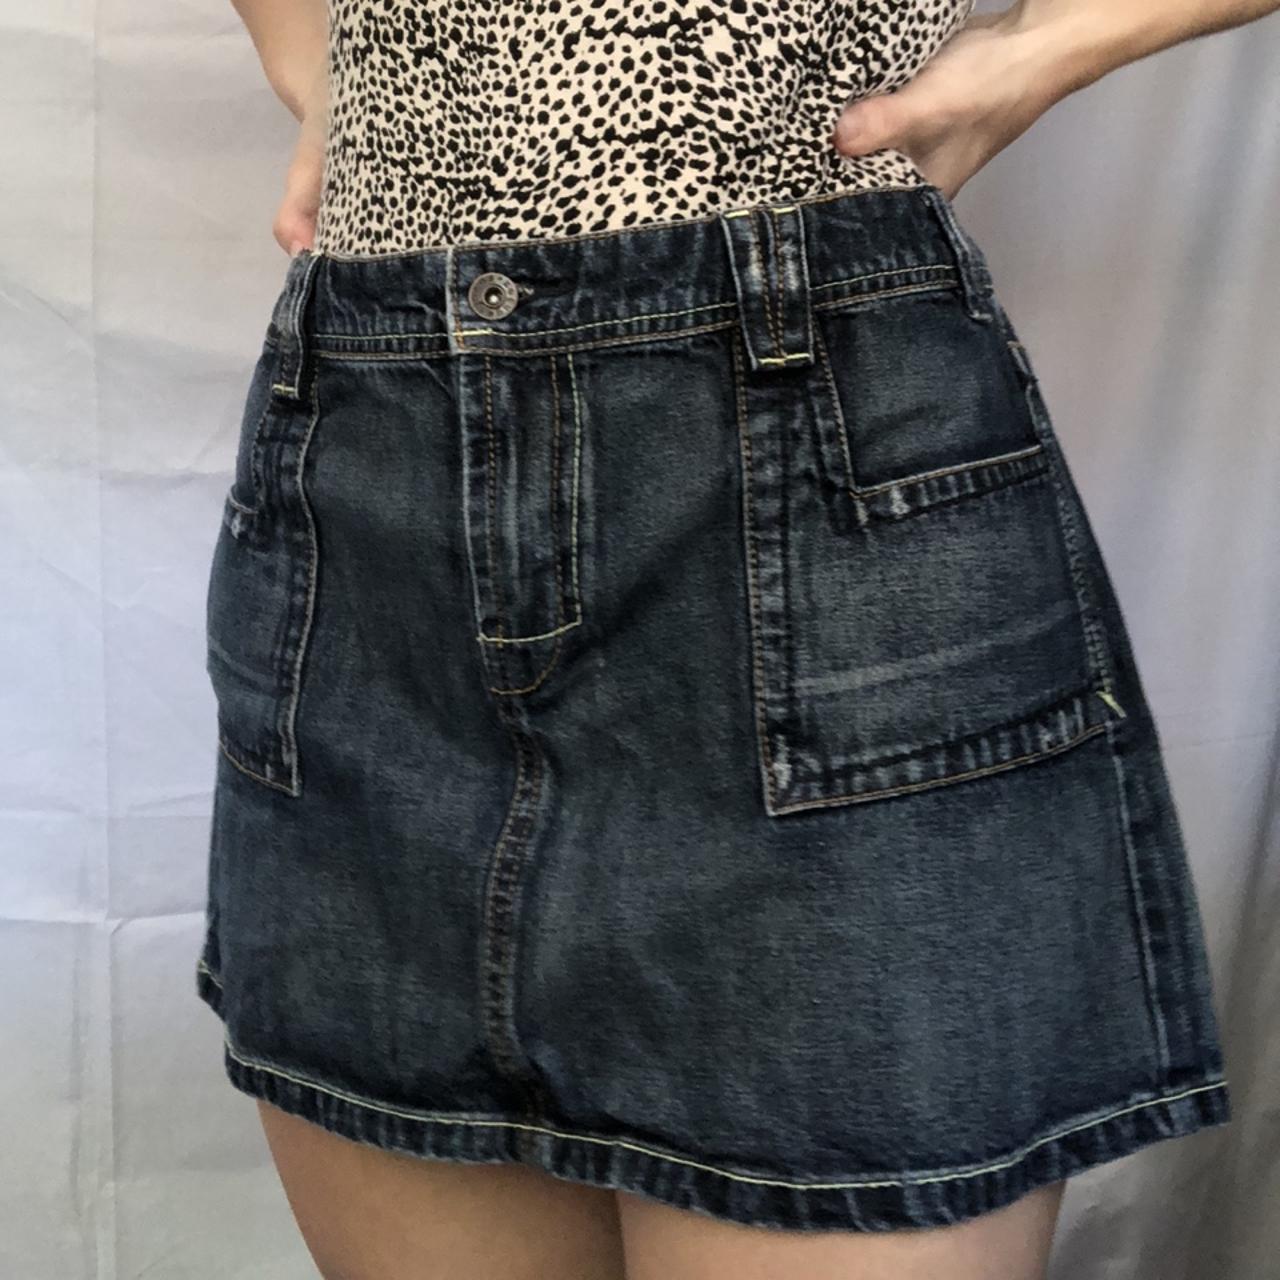 Refuge denim mini skirt! 👡 perfect for summer! 🏖... - Depop